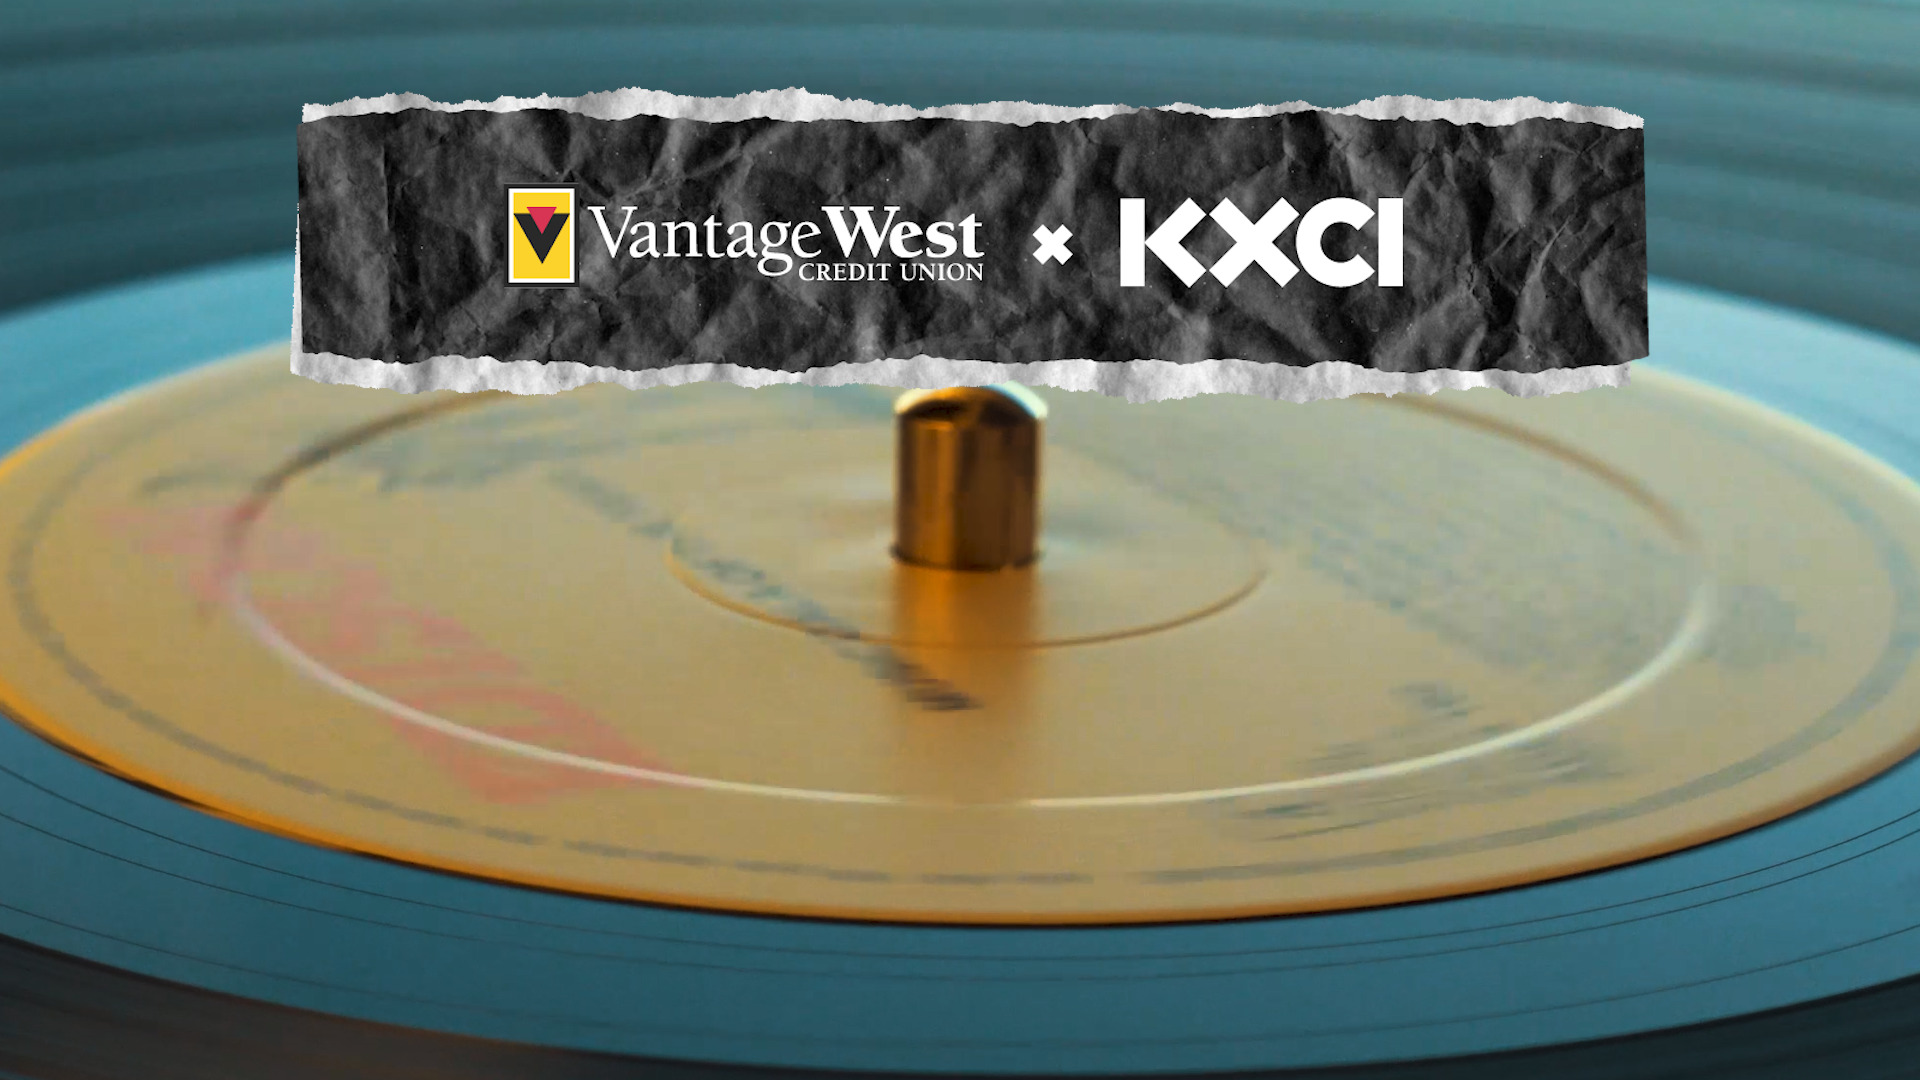 KXCI partnered with Vantage West